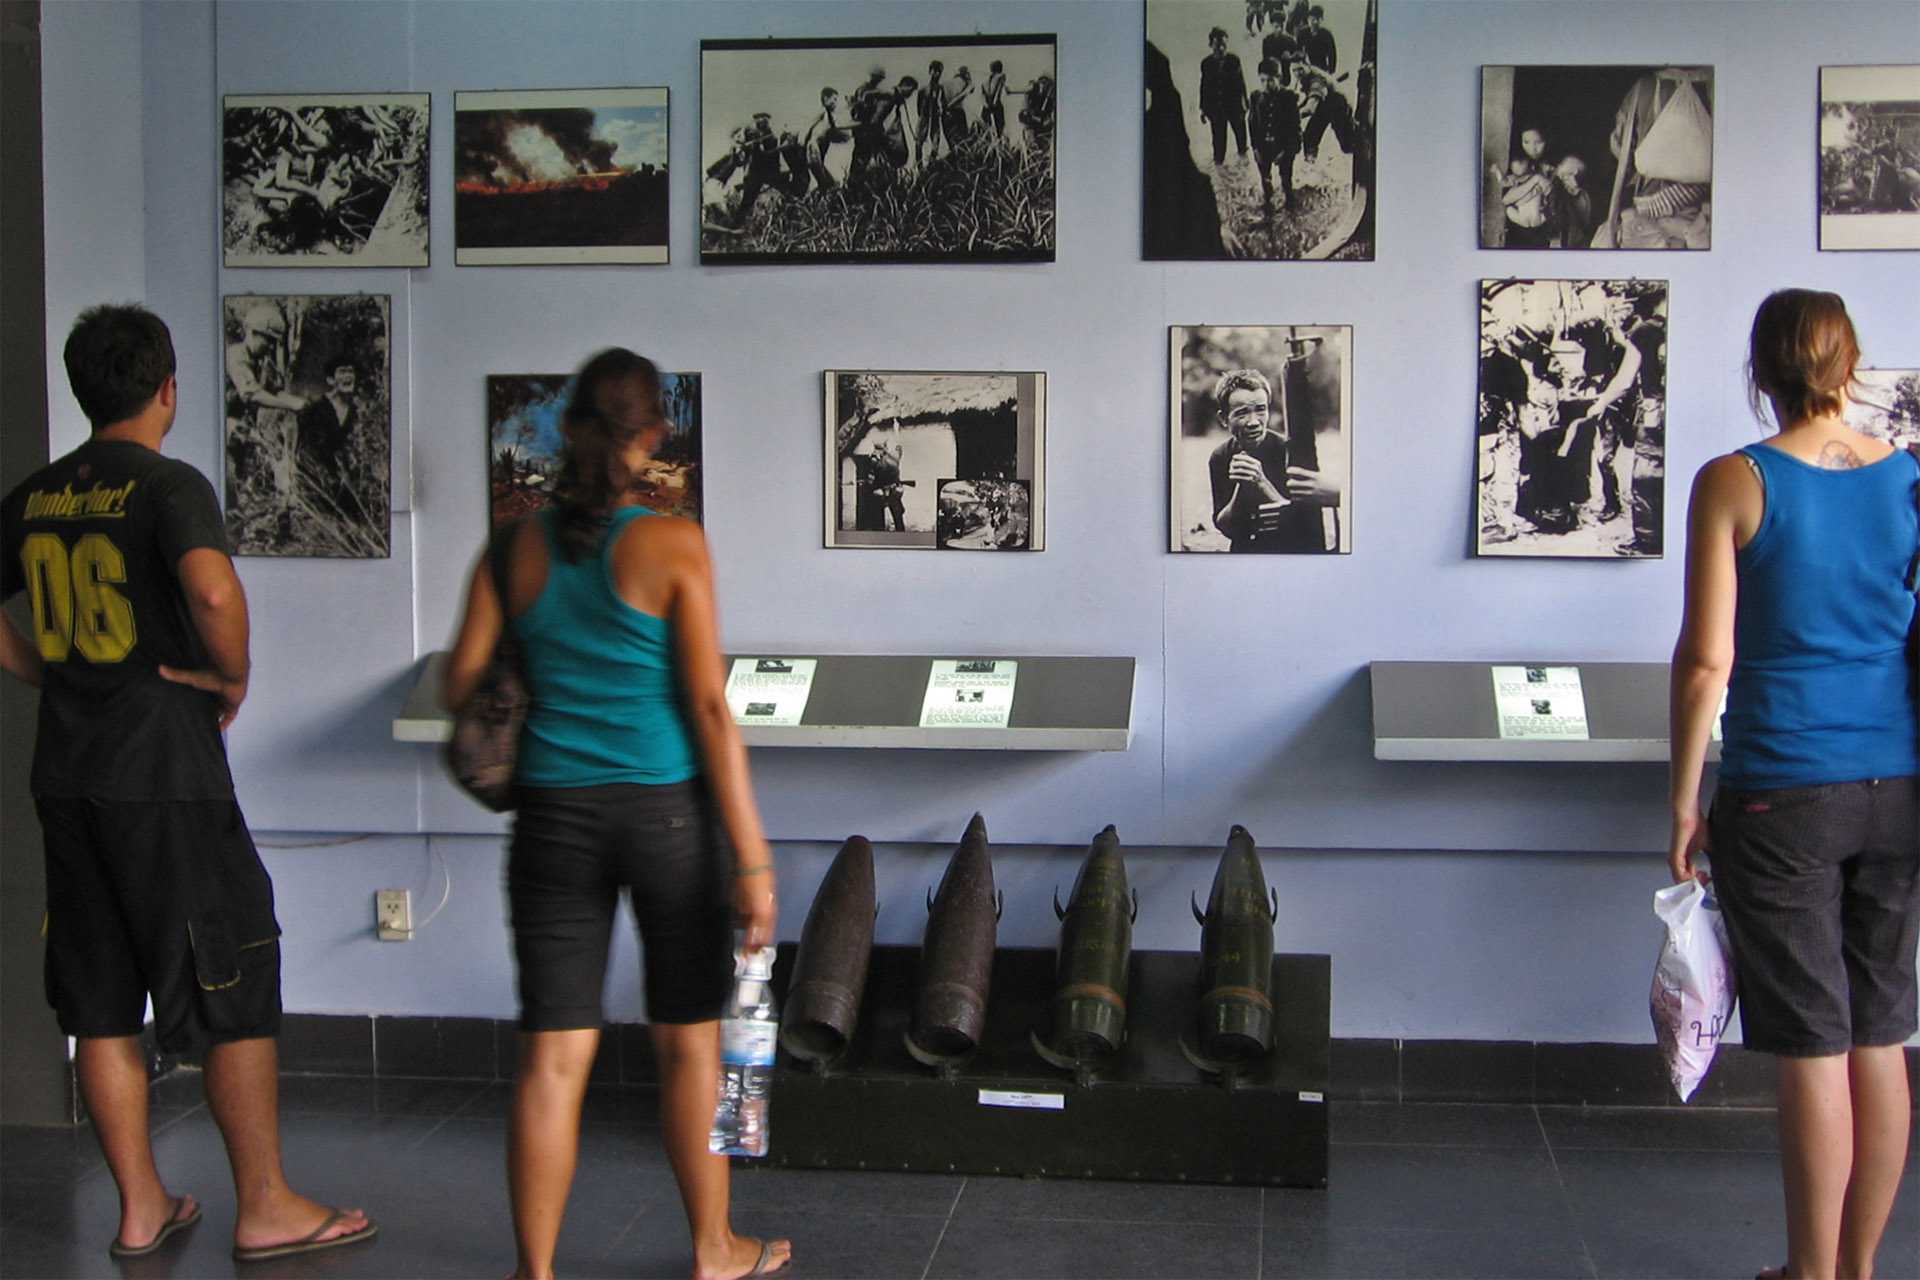 Карты смерти и американский шлем: в петербурге показали вещи участников вьетнамской войны